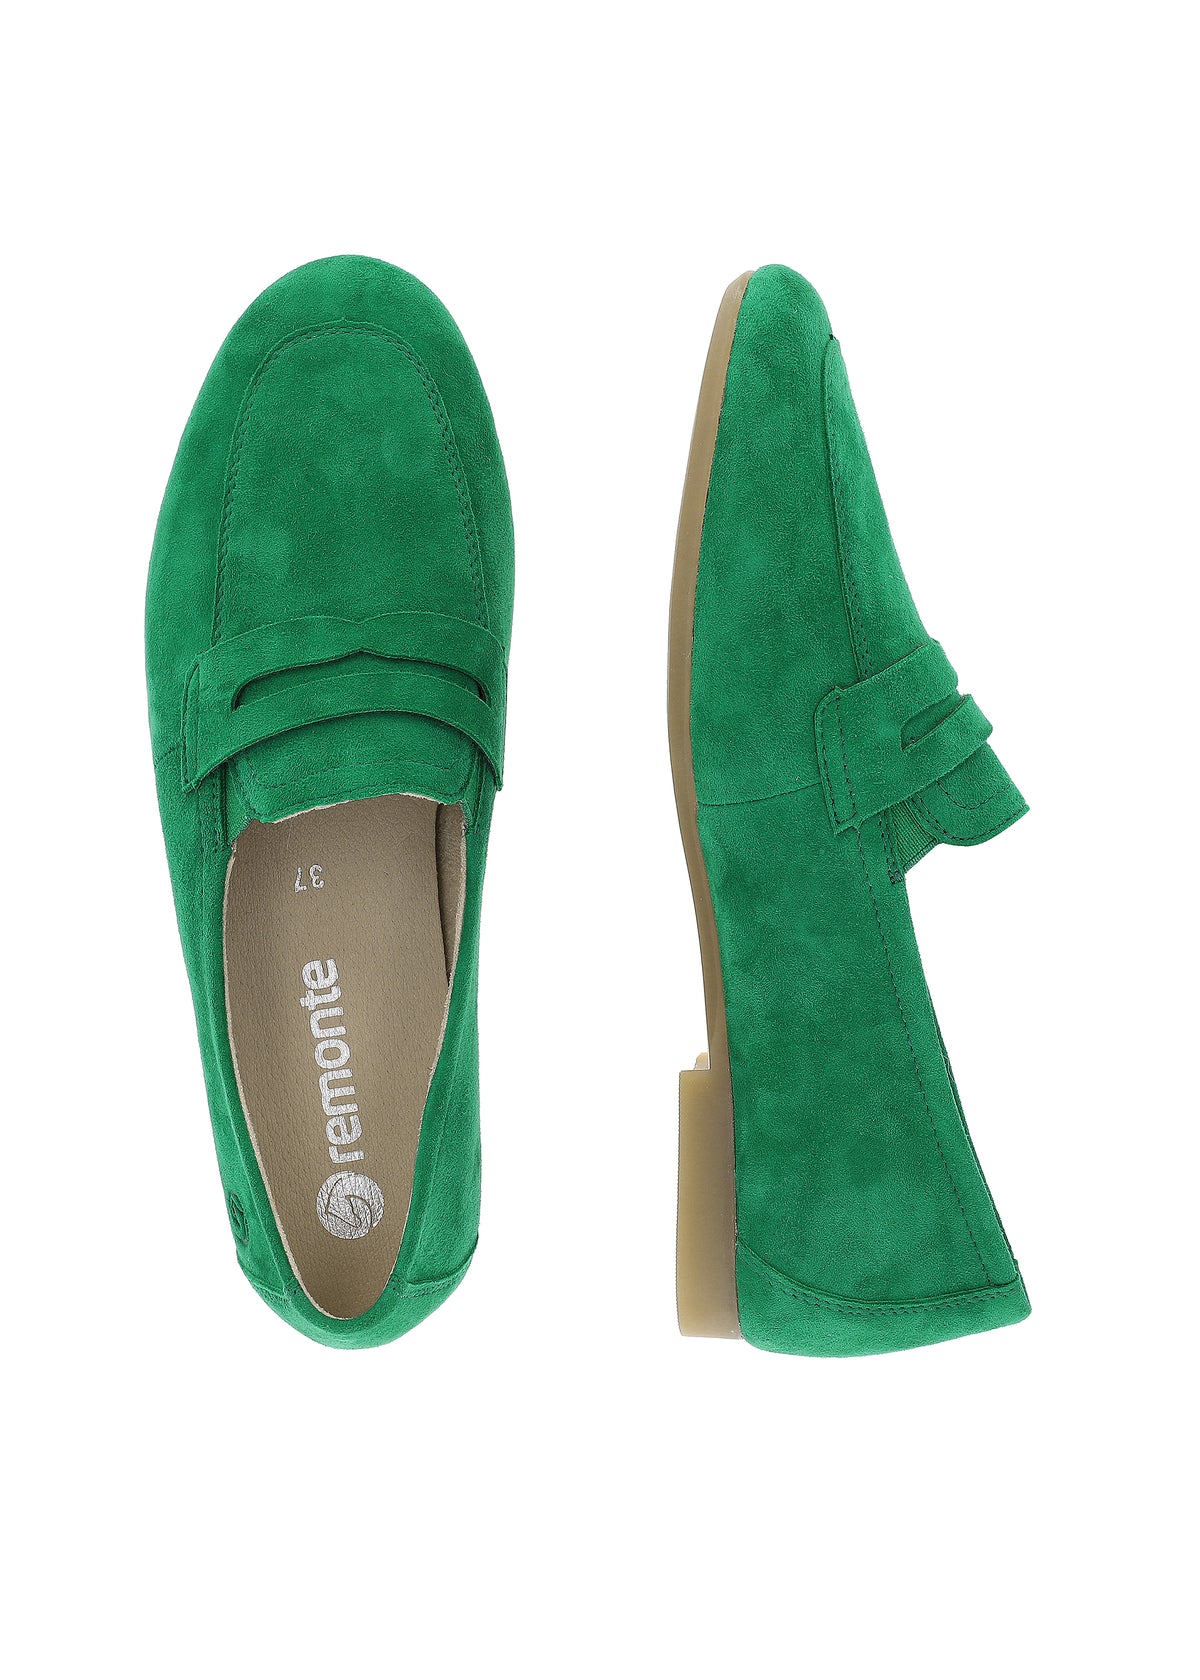 Loaferit - vihreä mokkanahka, loaferpanta koristeena